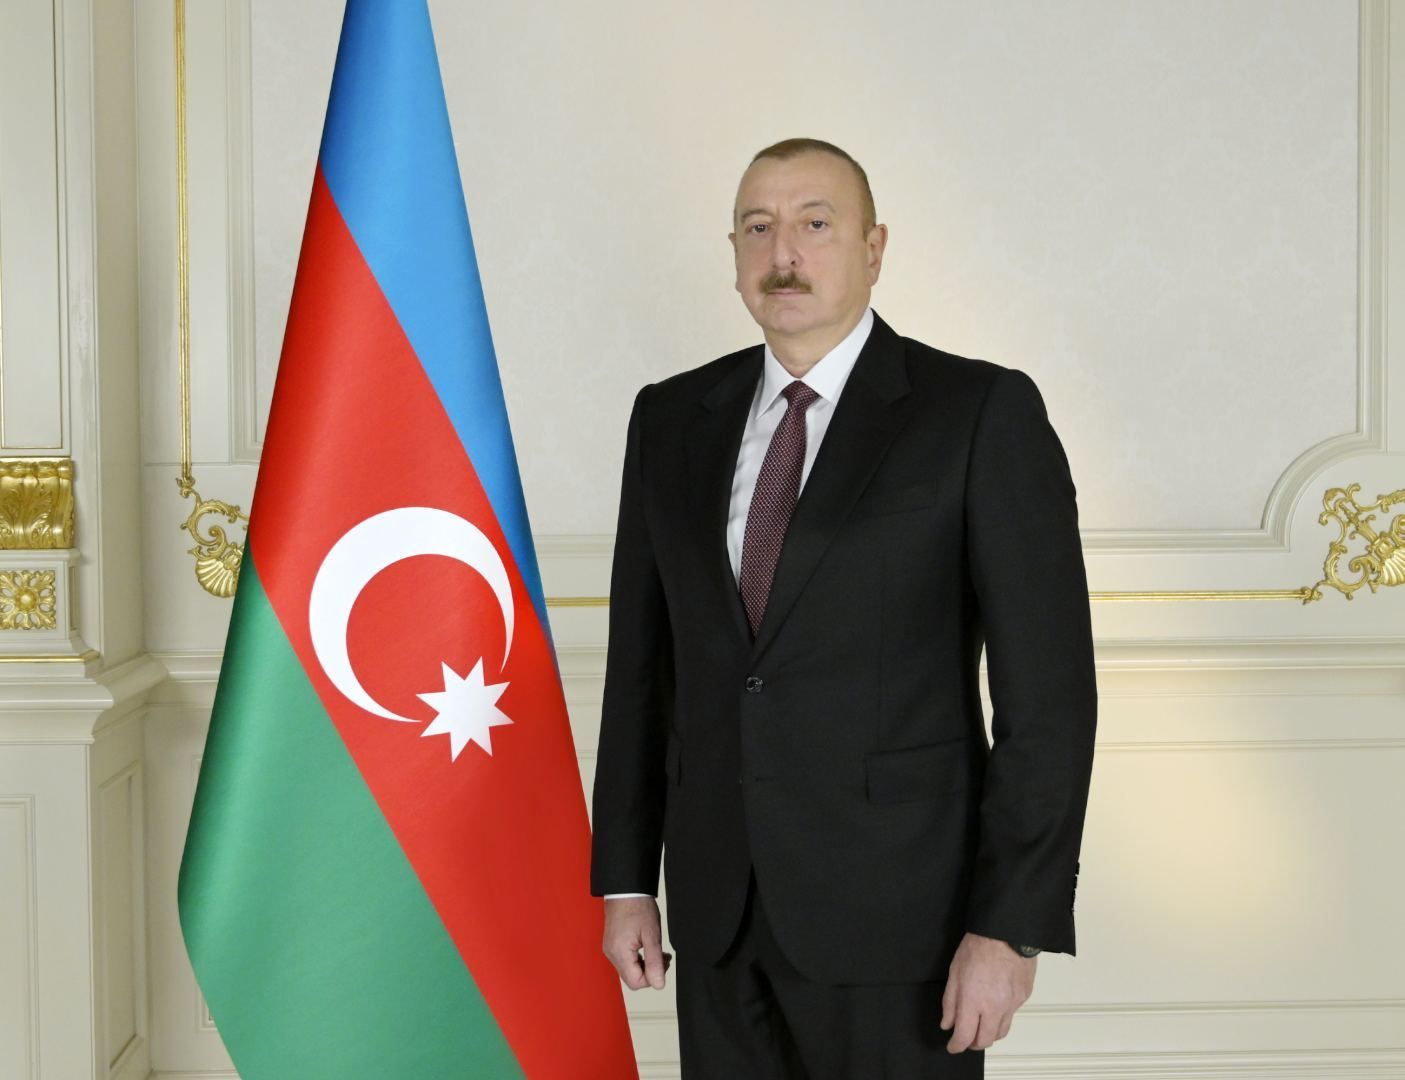 Azerbaijani President concludes his visit to Moldova